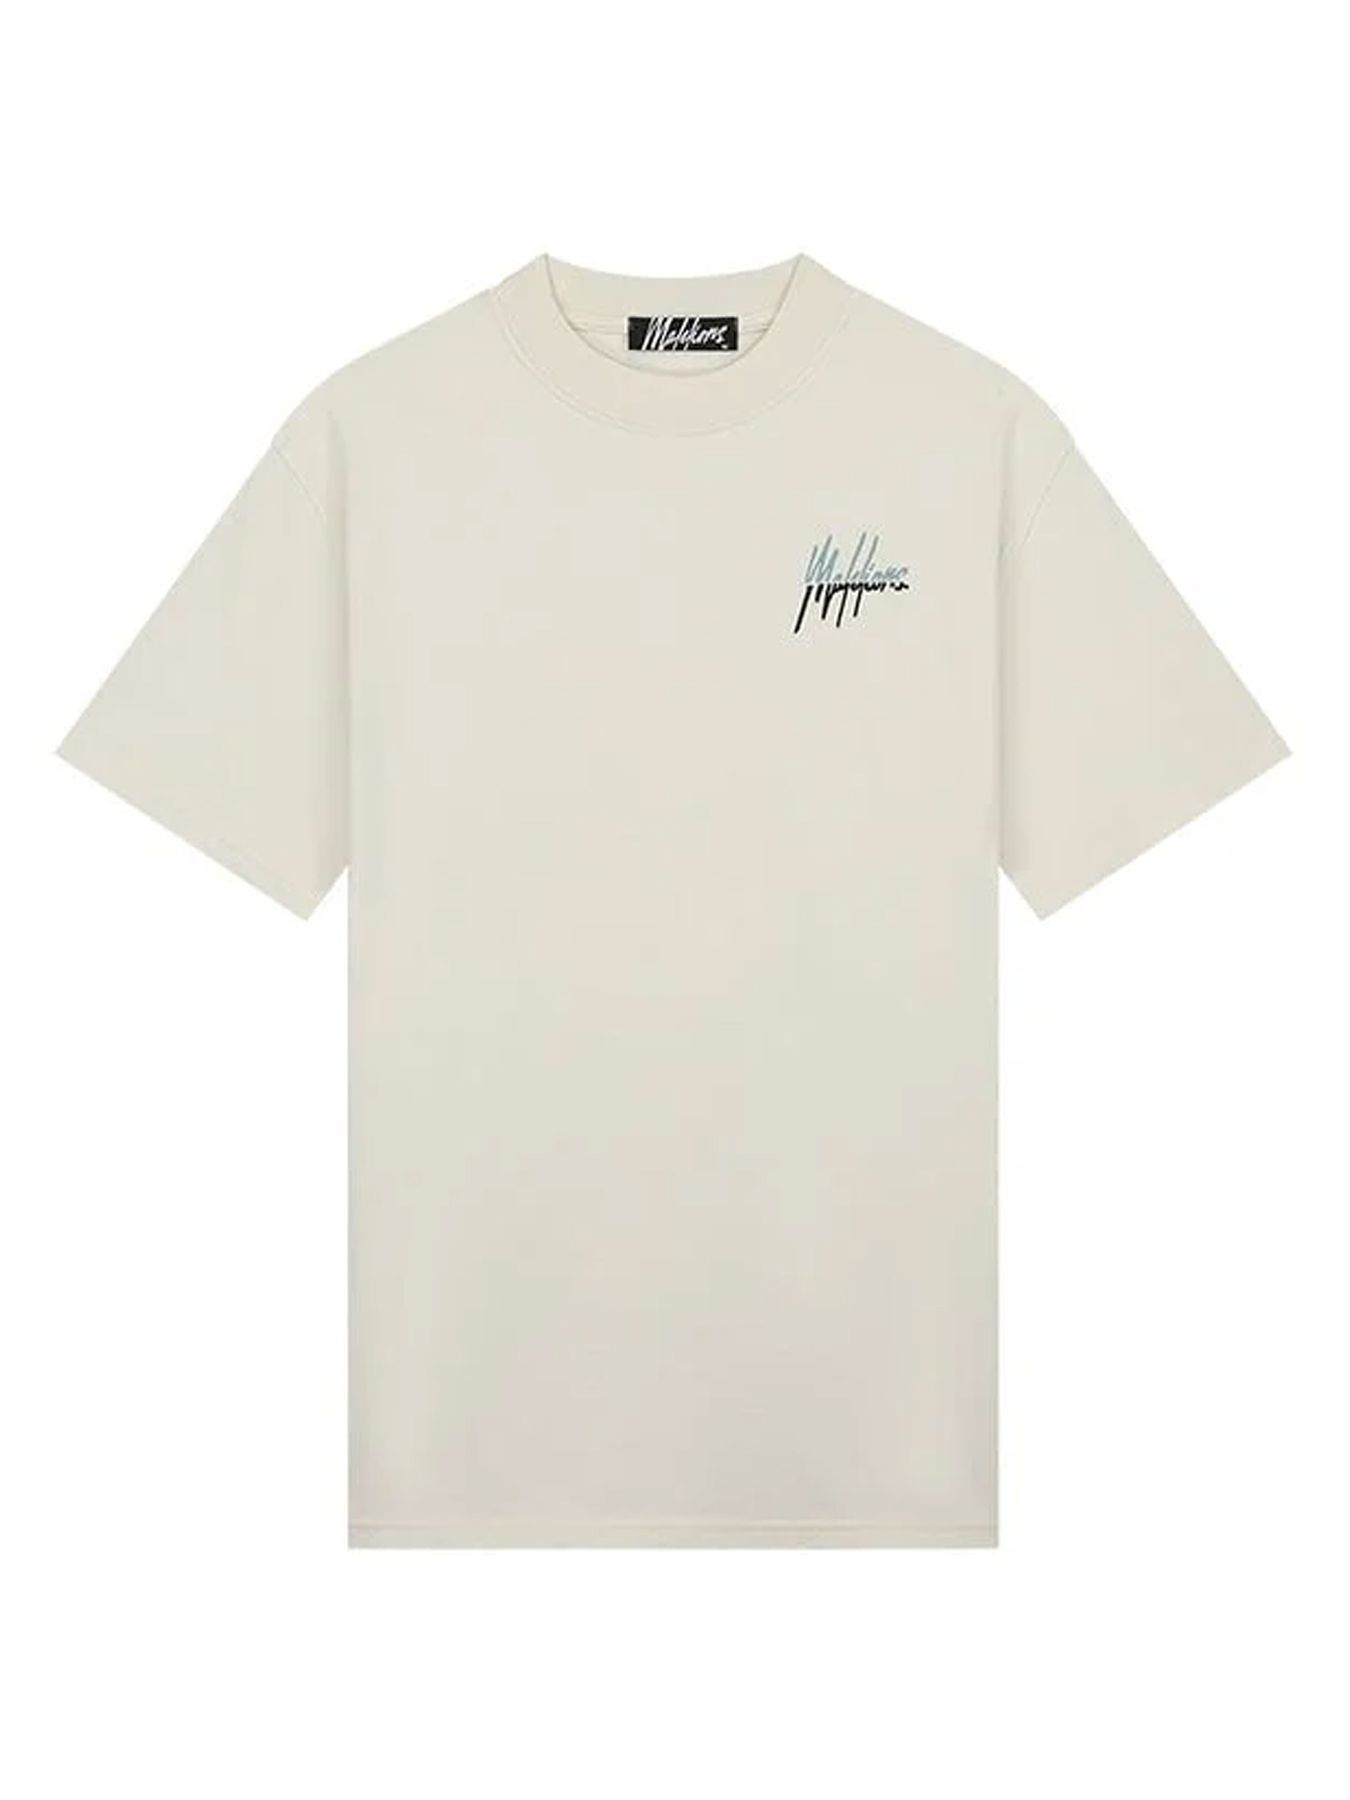 Malelions Men split t-shirt Off white/light blue 00108314-137